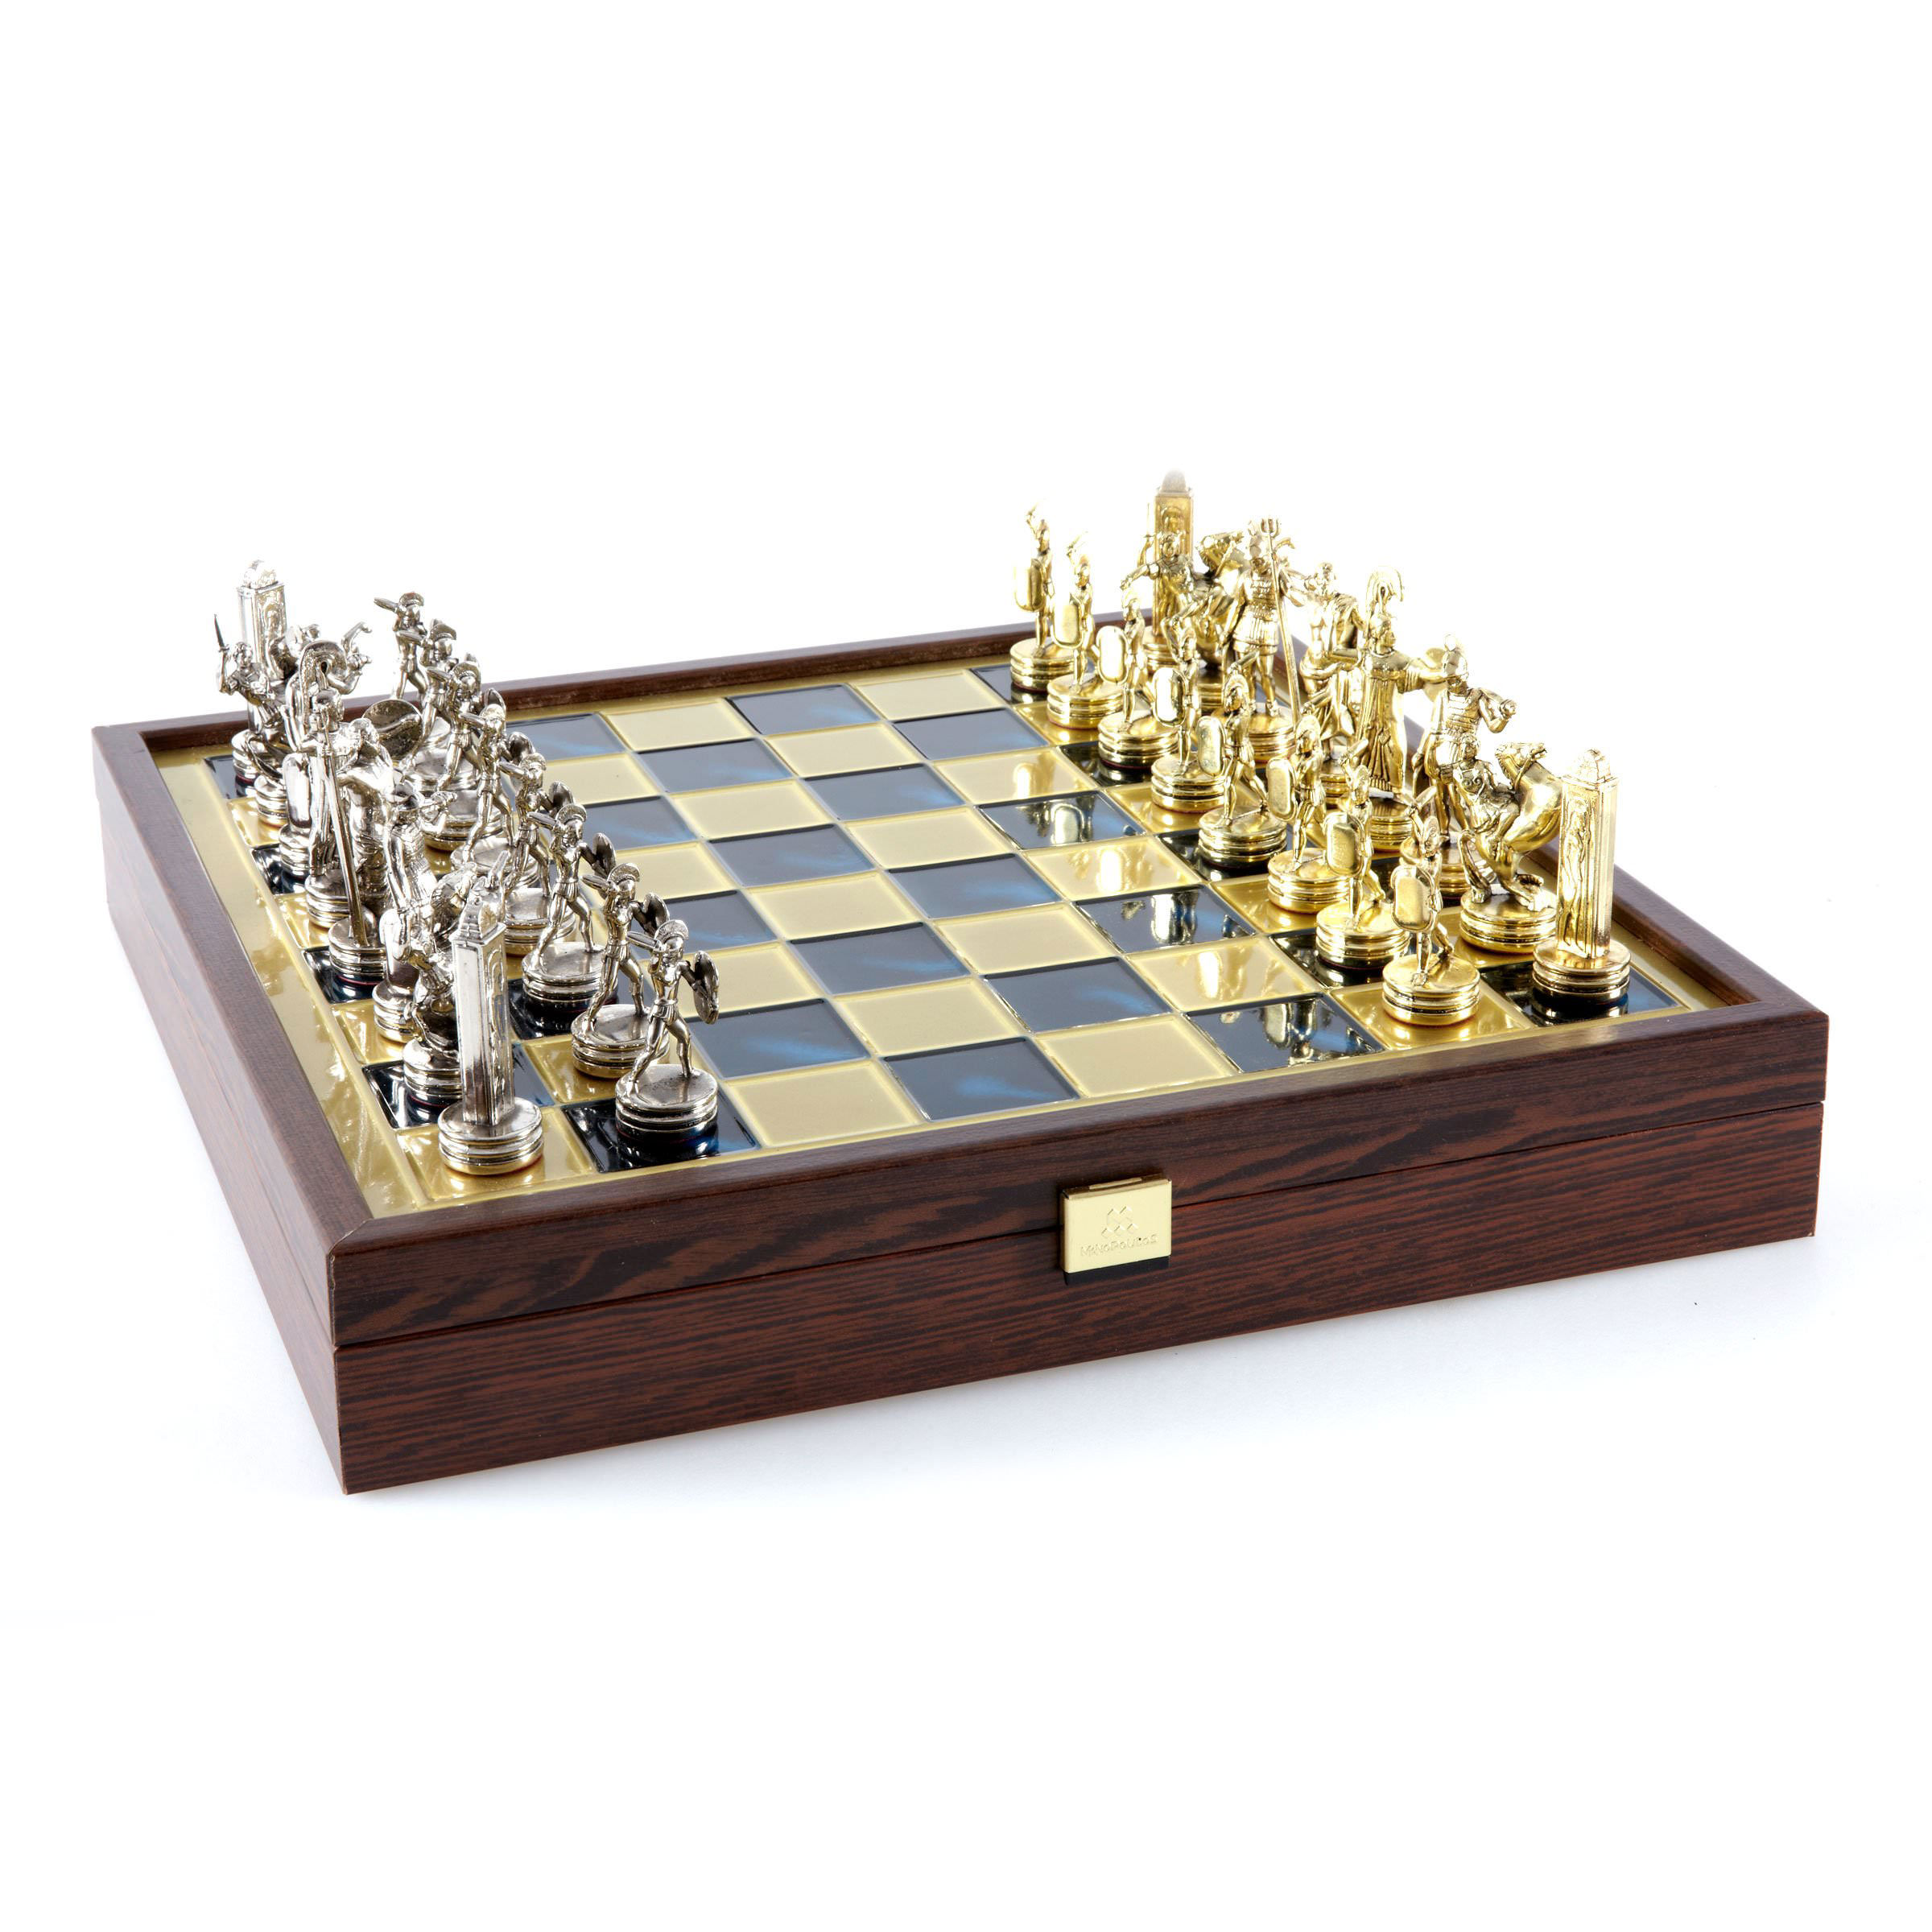 Chess Set - Greek Mythology - Gold - Silver Chessmen - Green Chessboard - Medium